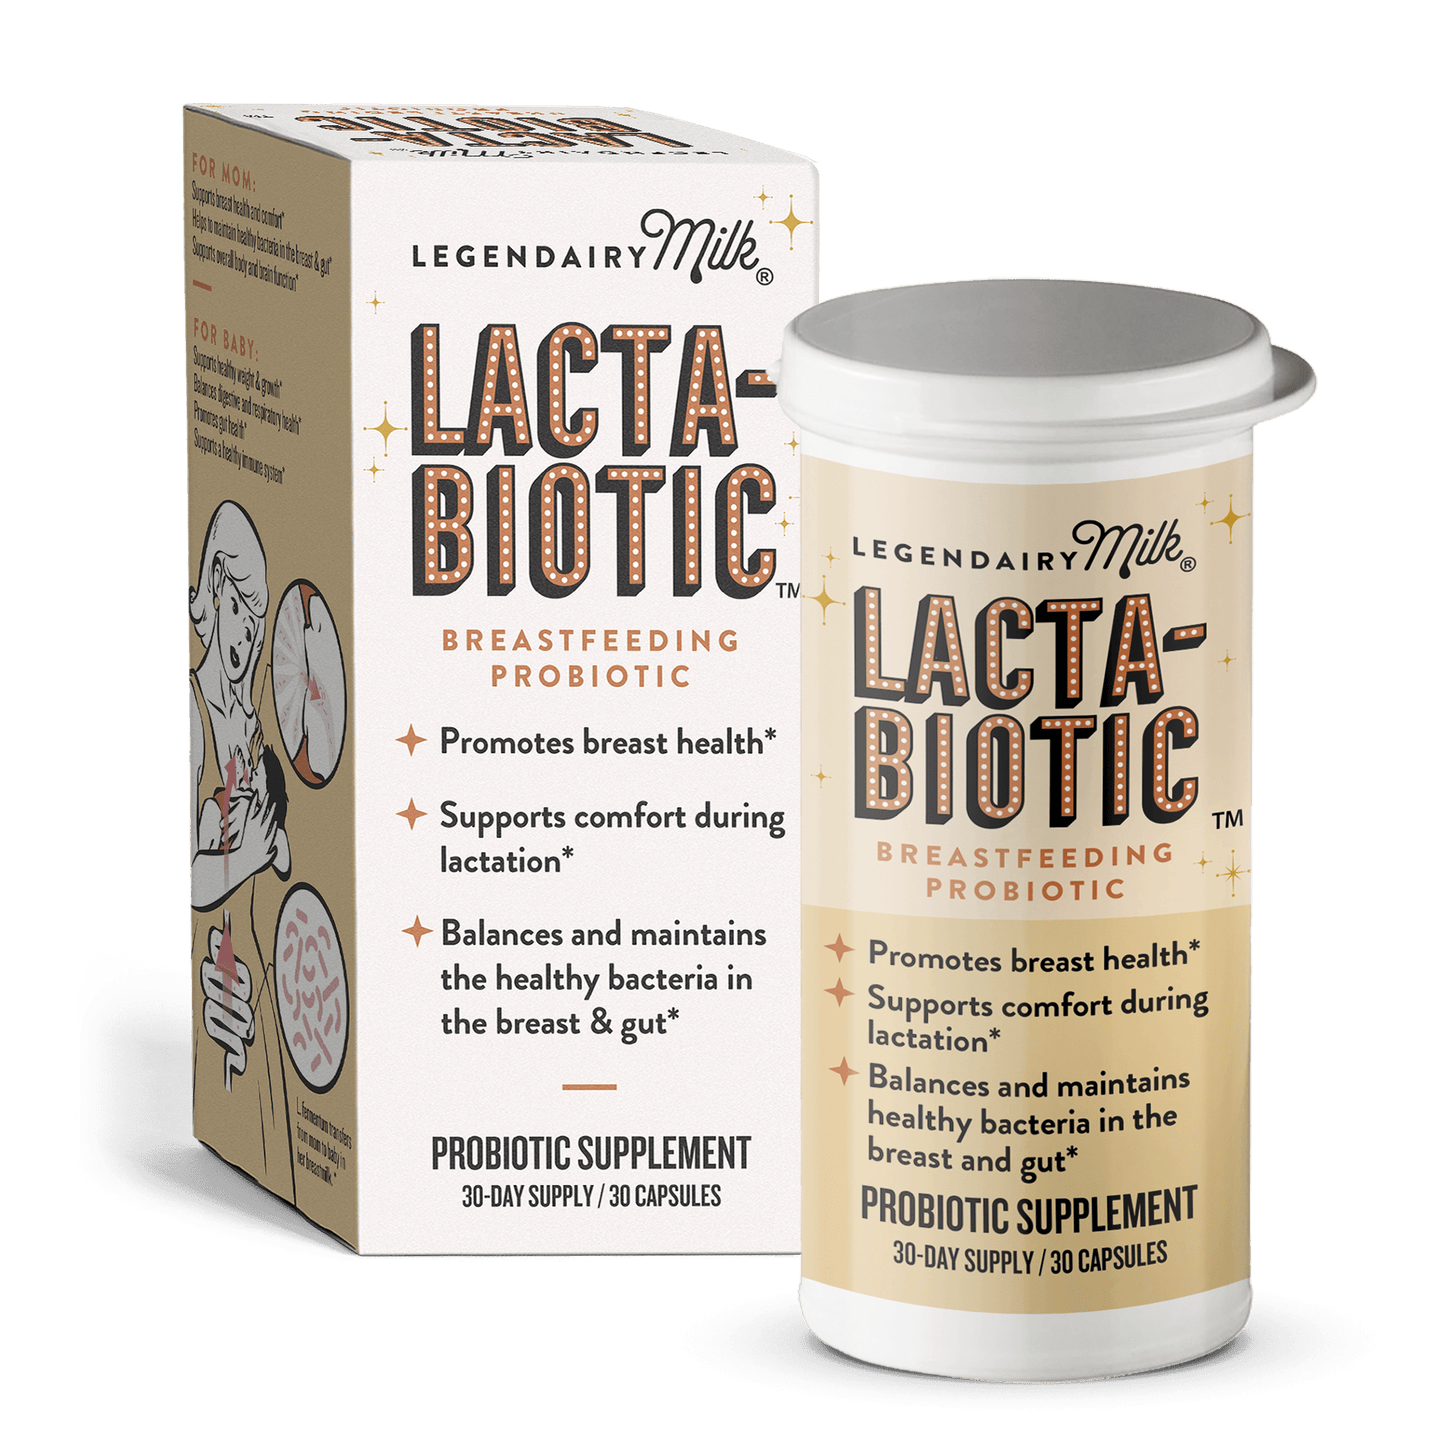 Lacta-Biotic™ - Legendairy Milk